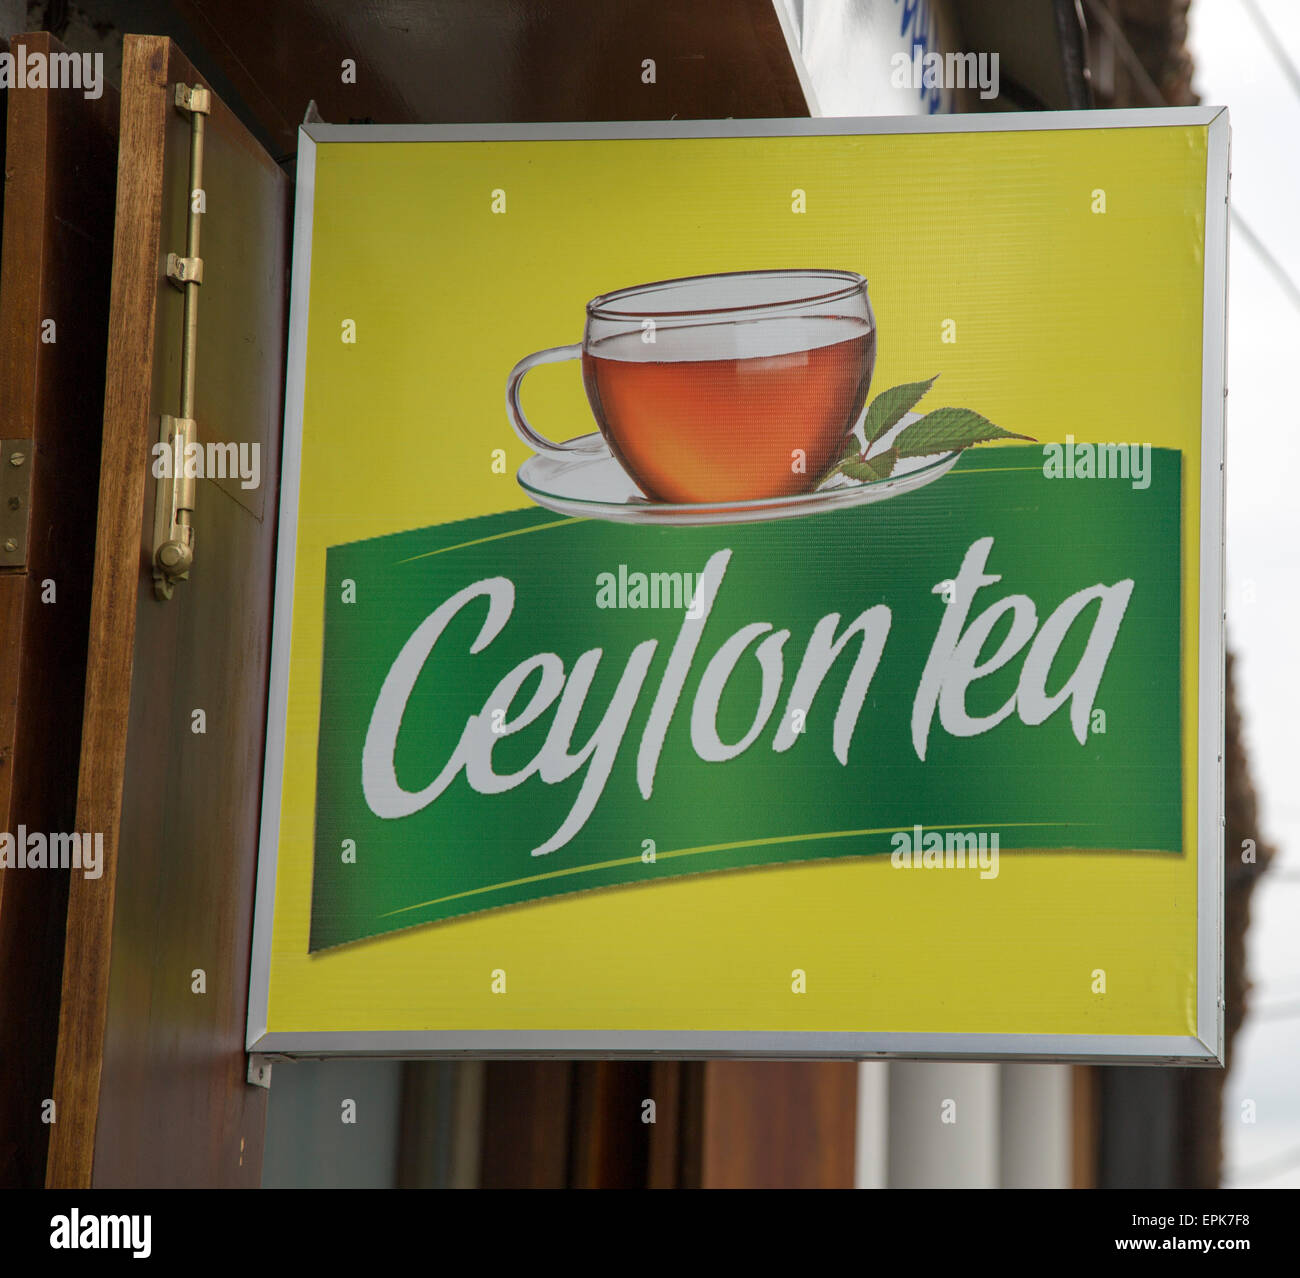 Ceylon tea advertising sign in historic town of Galle, Sri Lanka, Asia Stock Photo